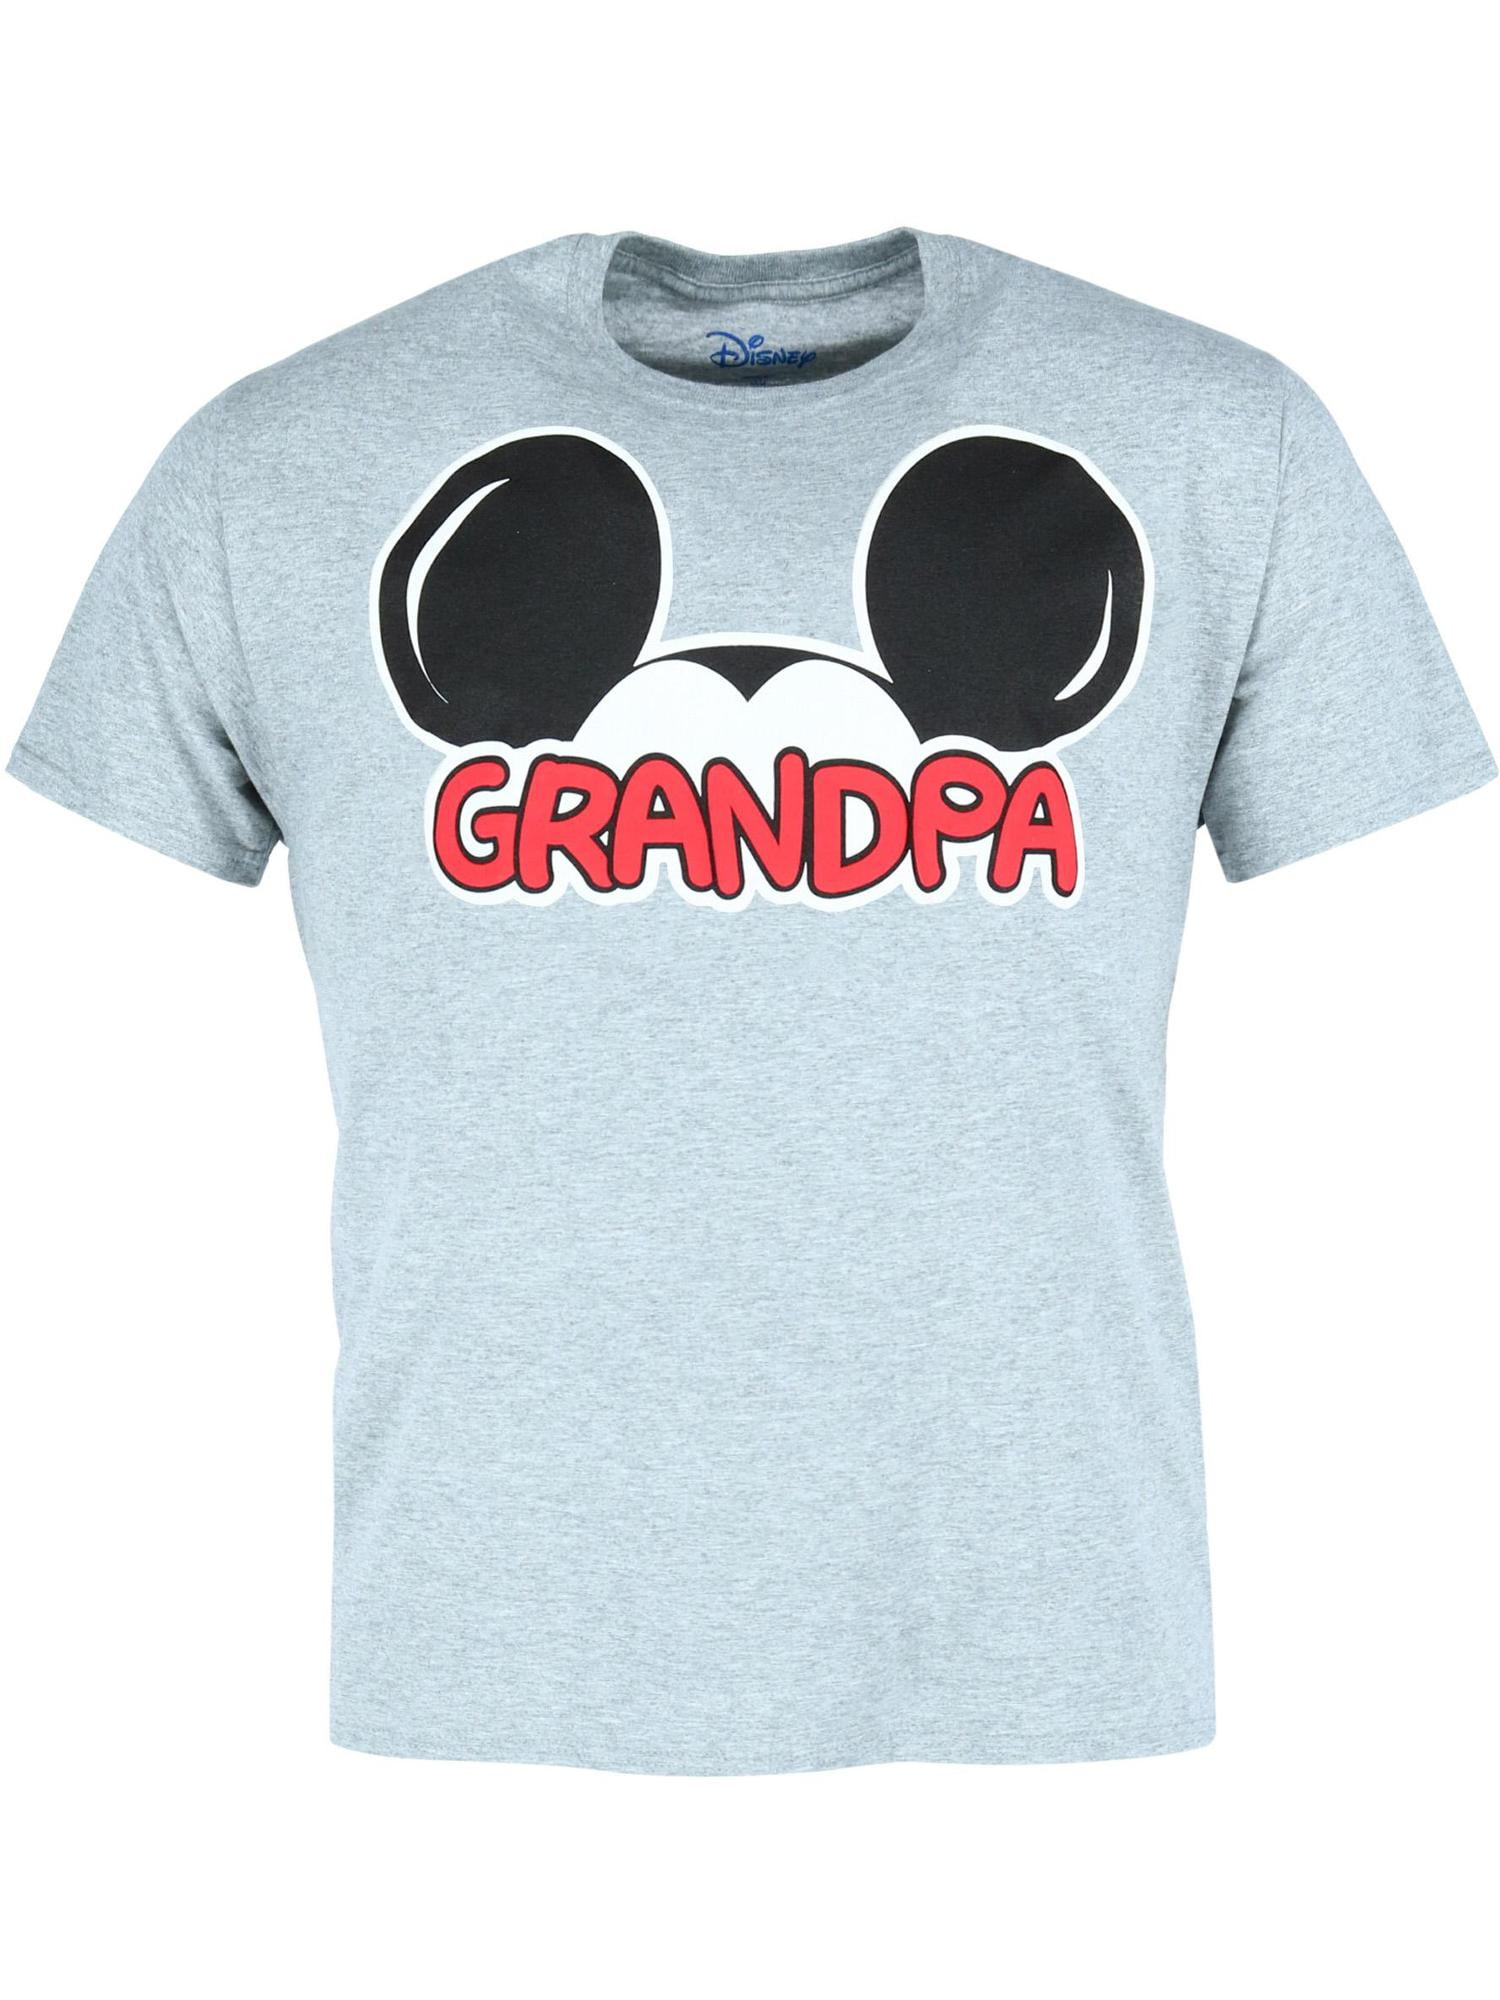 T-shirt Mickey Mouse Camouflage Disneyland World rétro classique vintage humoristique pour homme